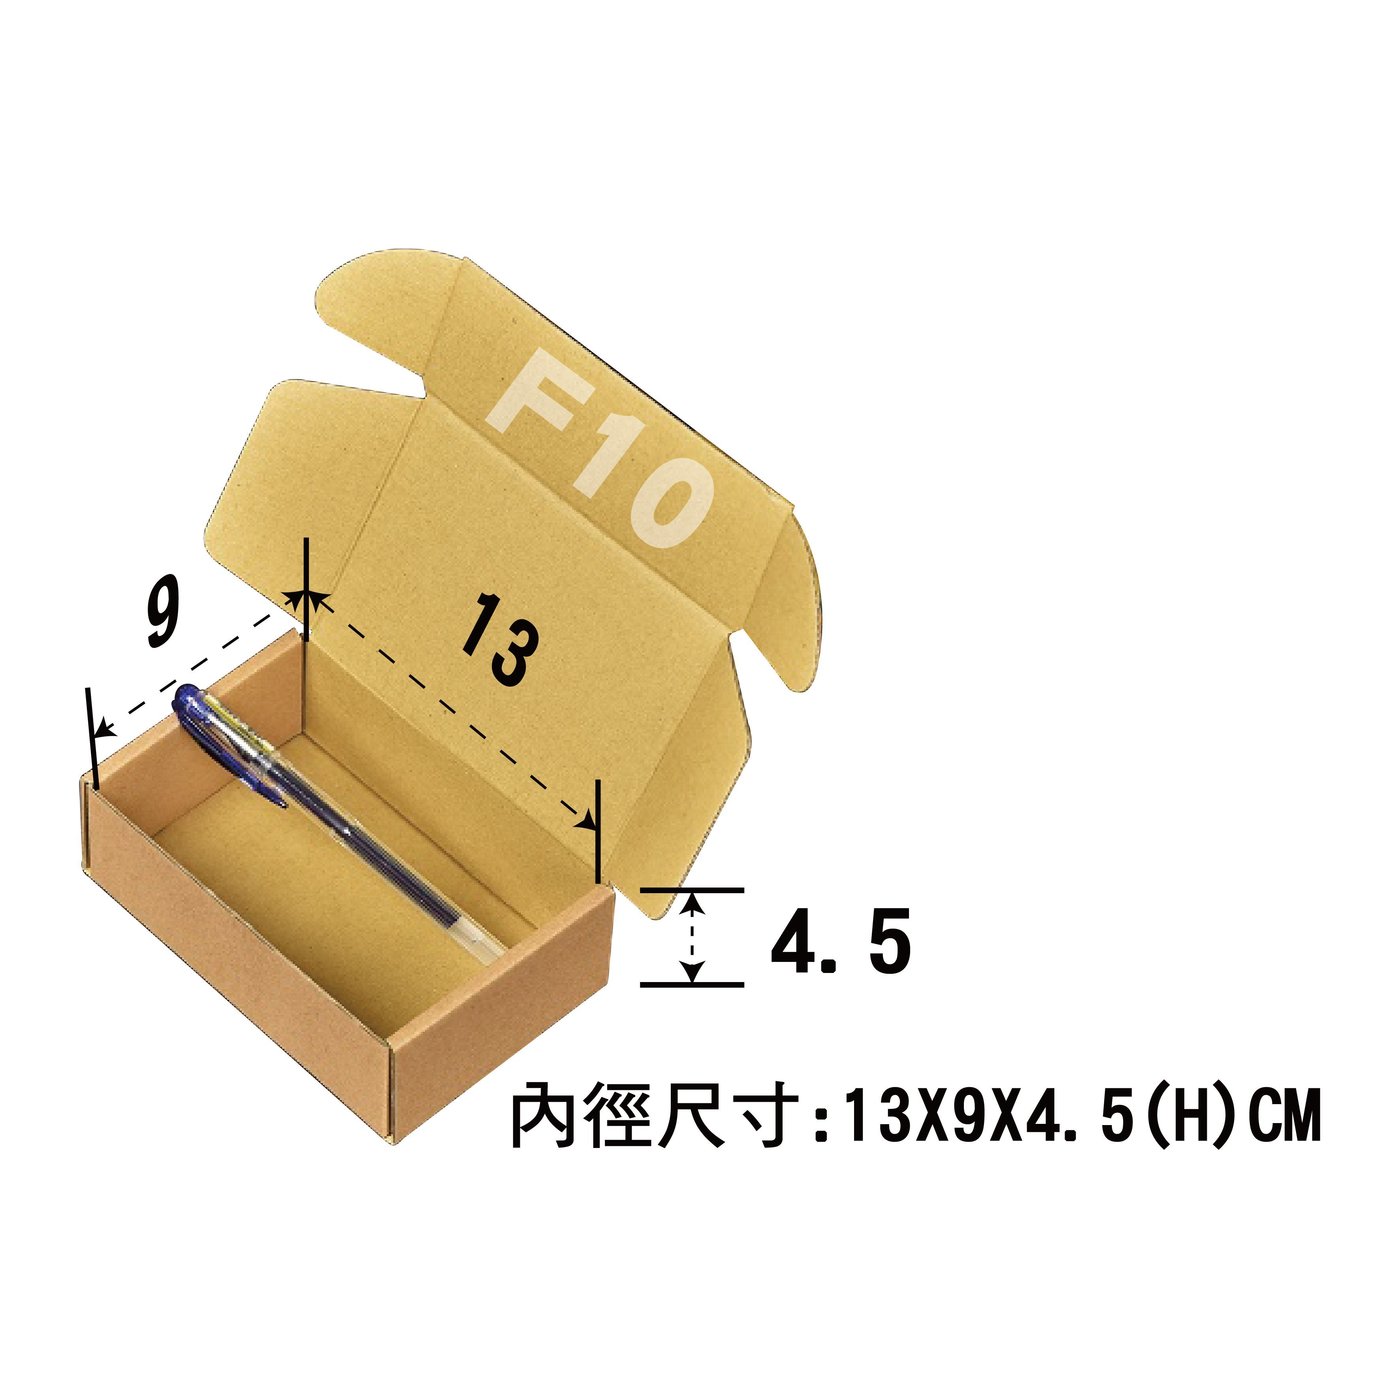 披薩盒【13X9X4.5 CM】【50入】小紙箱紙盒超商紙箱掀蓋紙箱| Yahoo奇摩拍賣